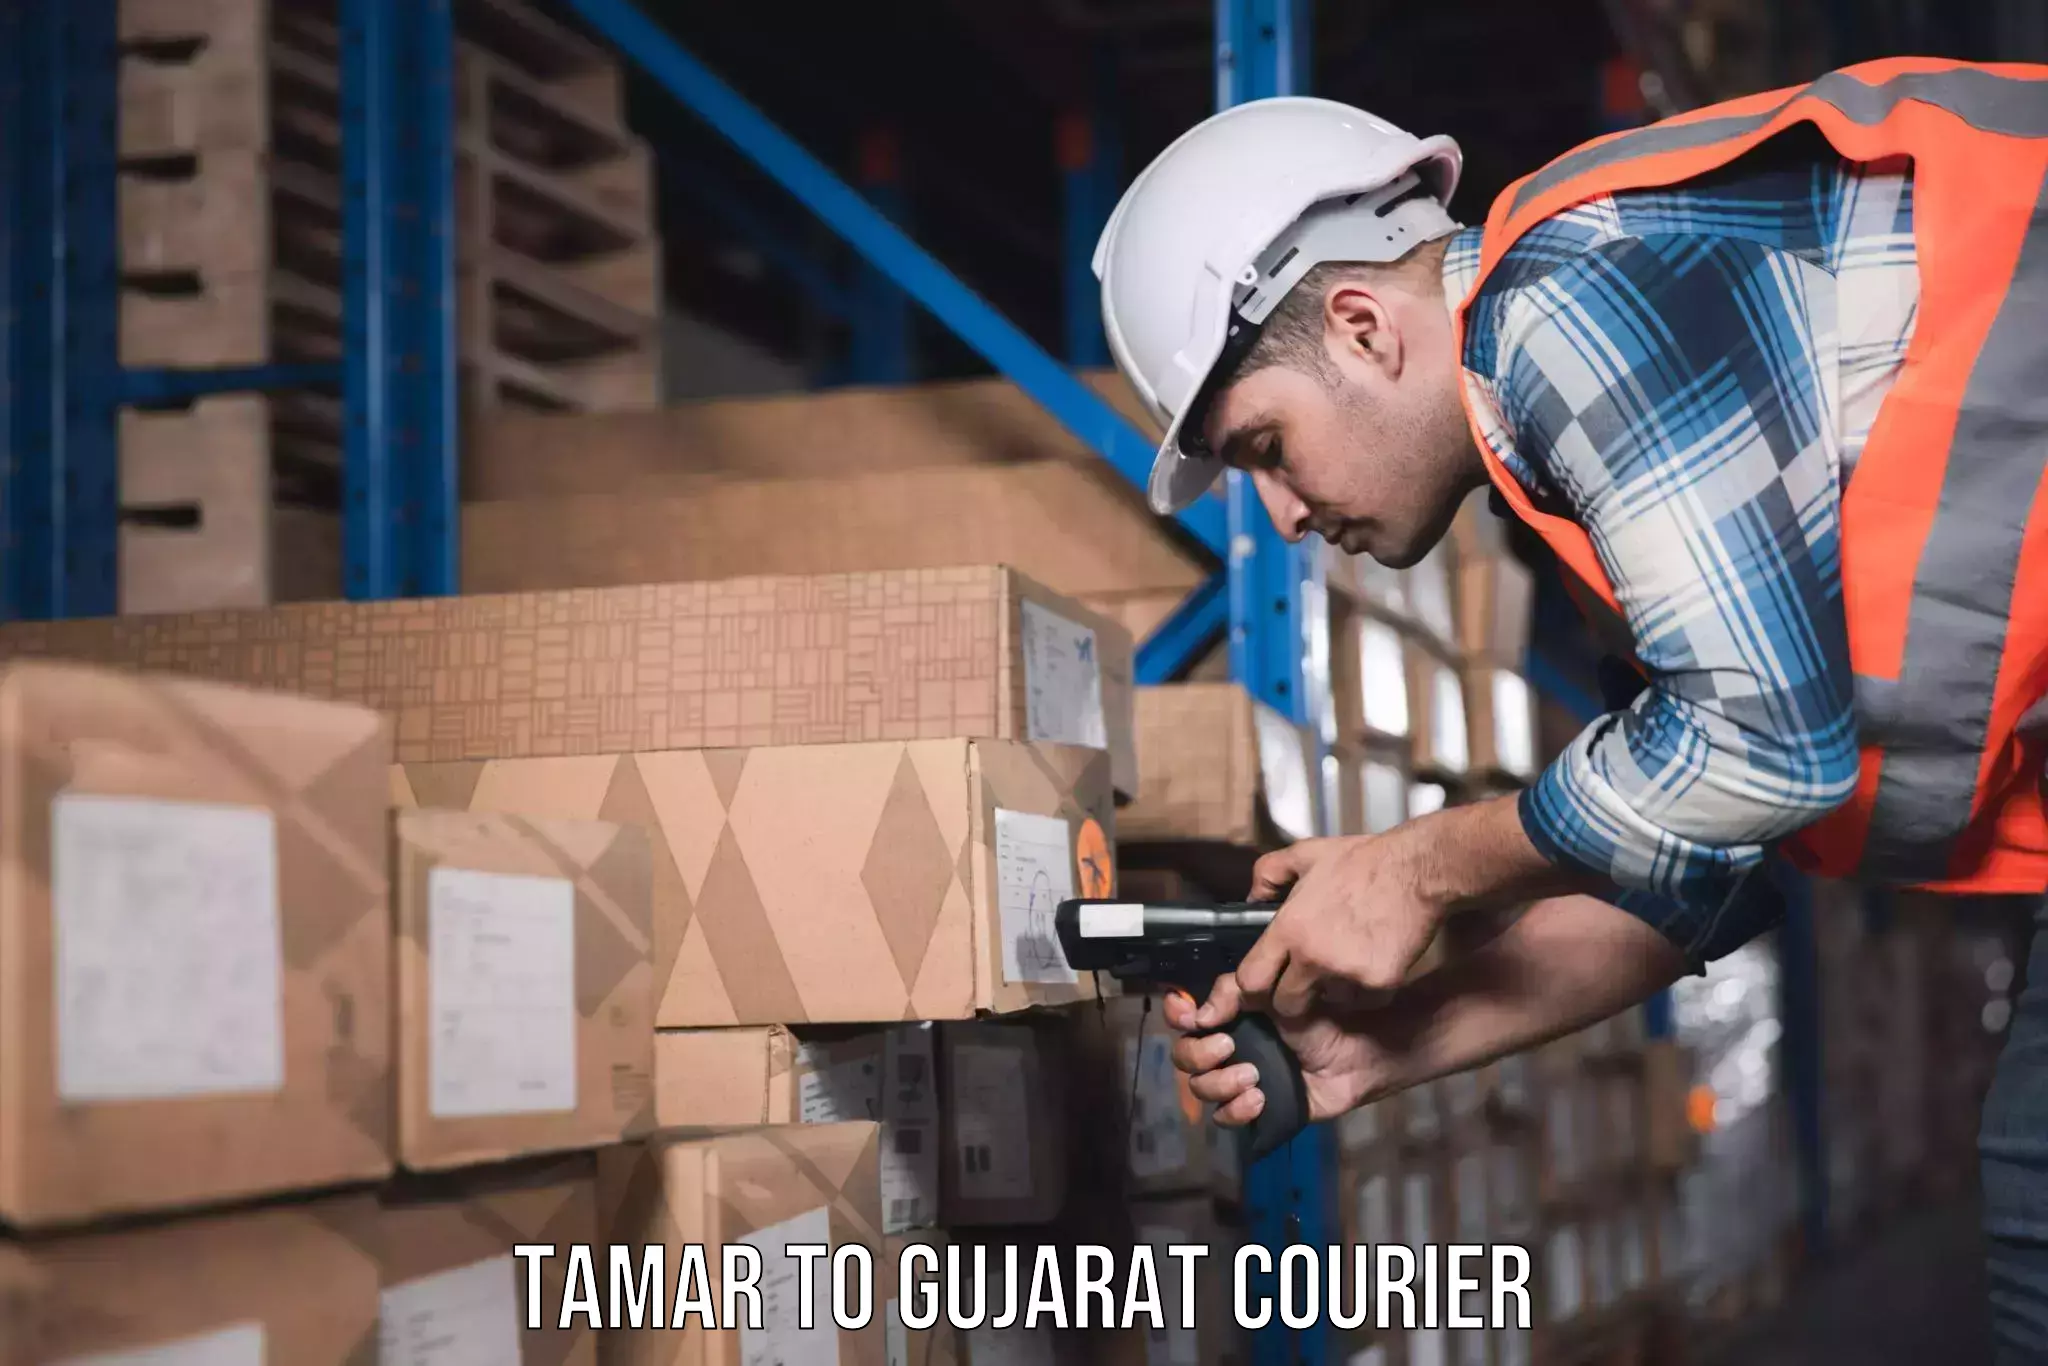 Furniture moving experts Tamar to Gujarat